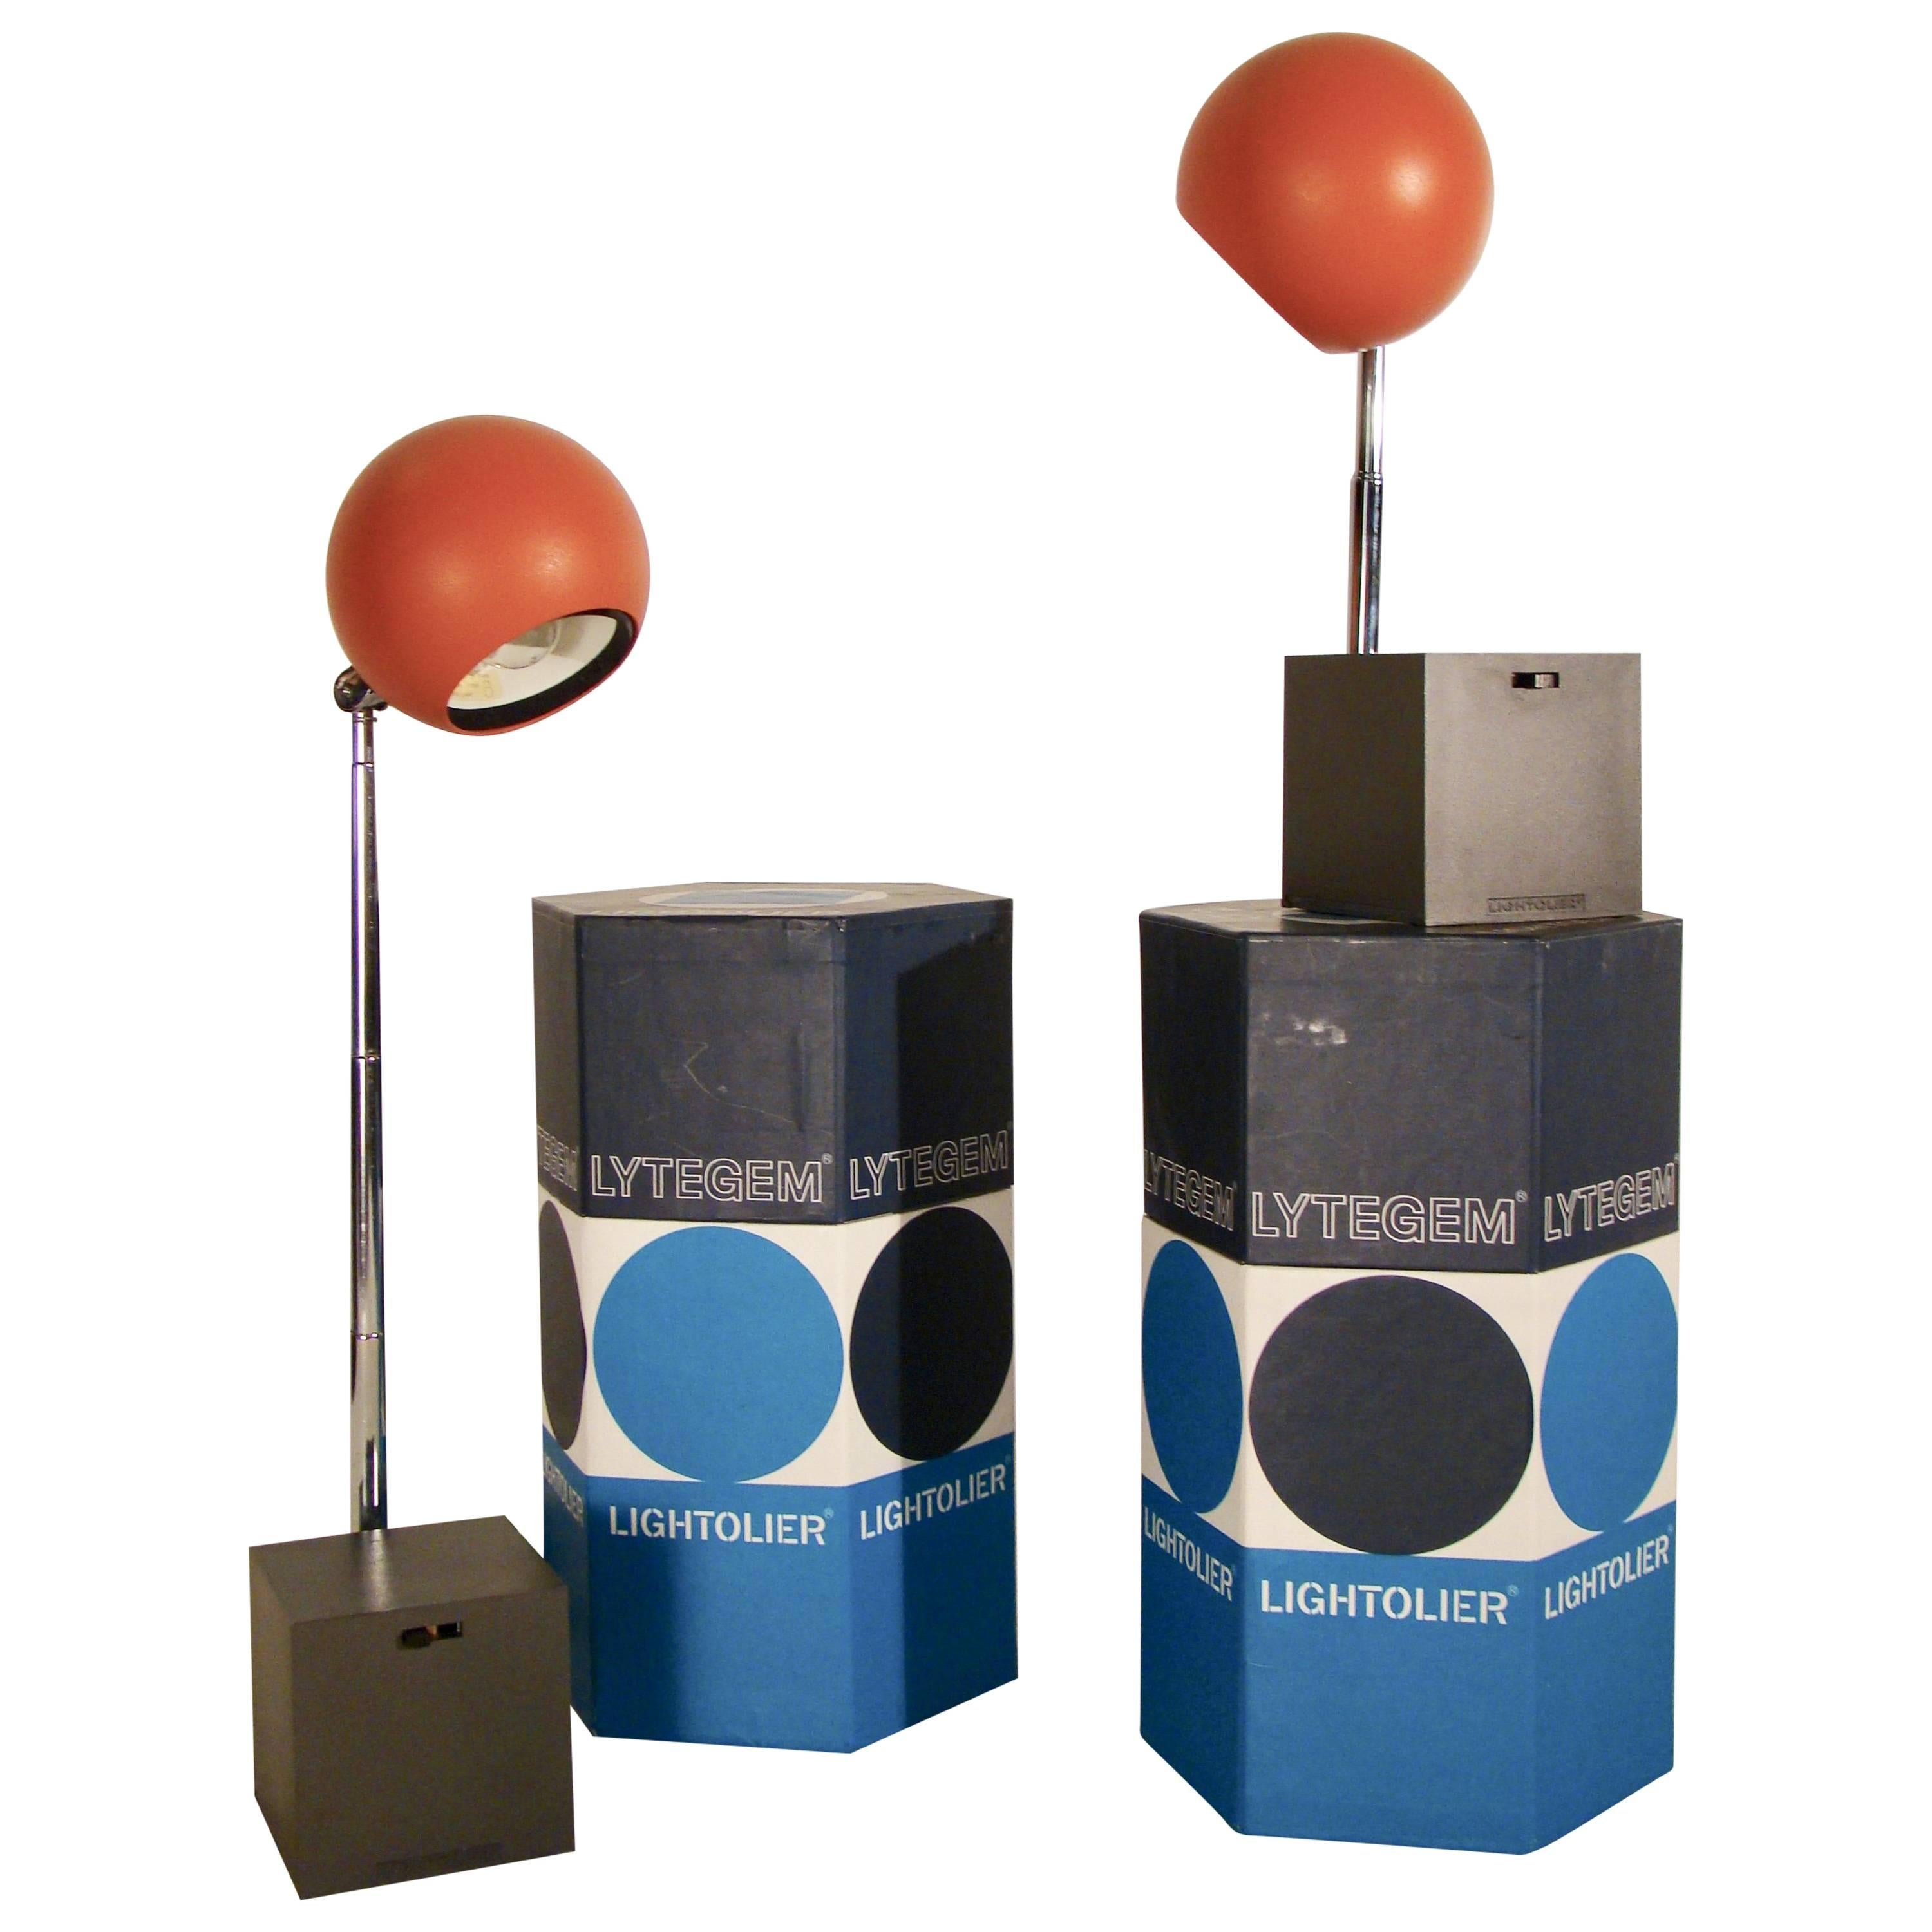 Michael Lax Lytegem Lightolie, Pair of Telescopic Eyeball Tasks Lamps in Box For Sale